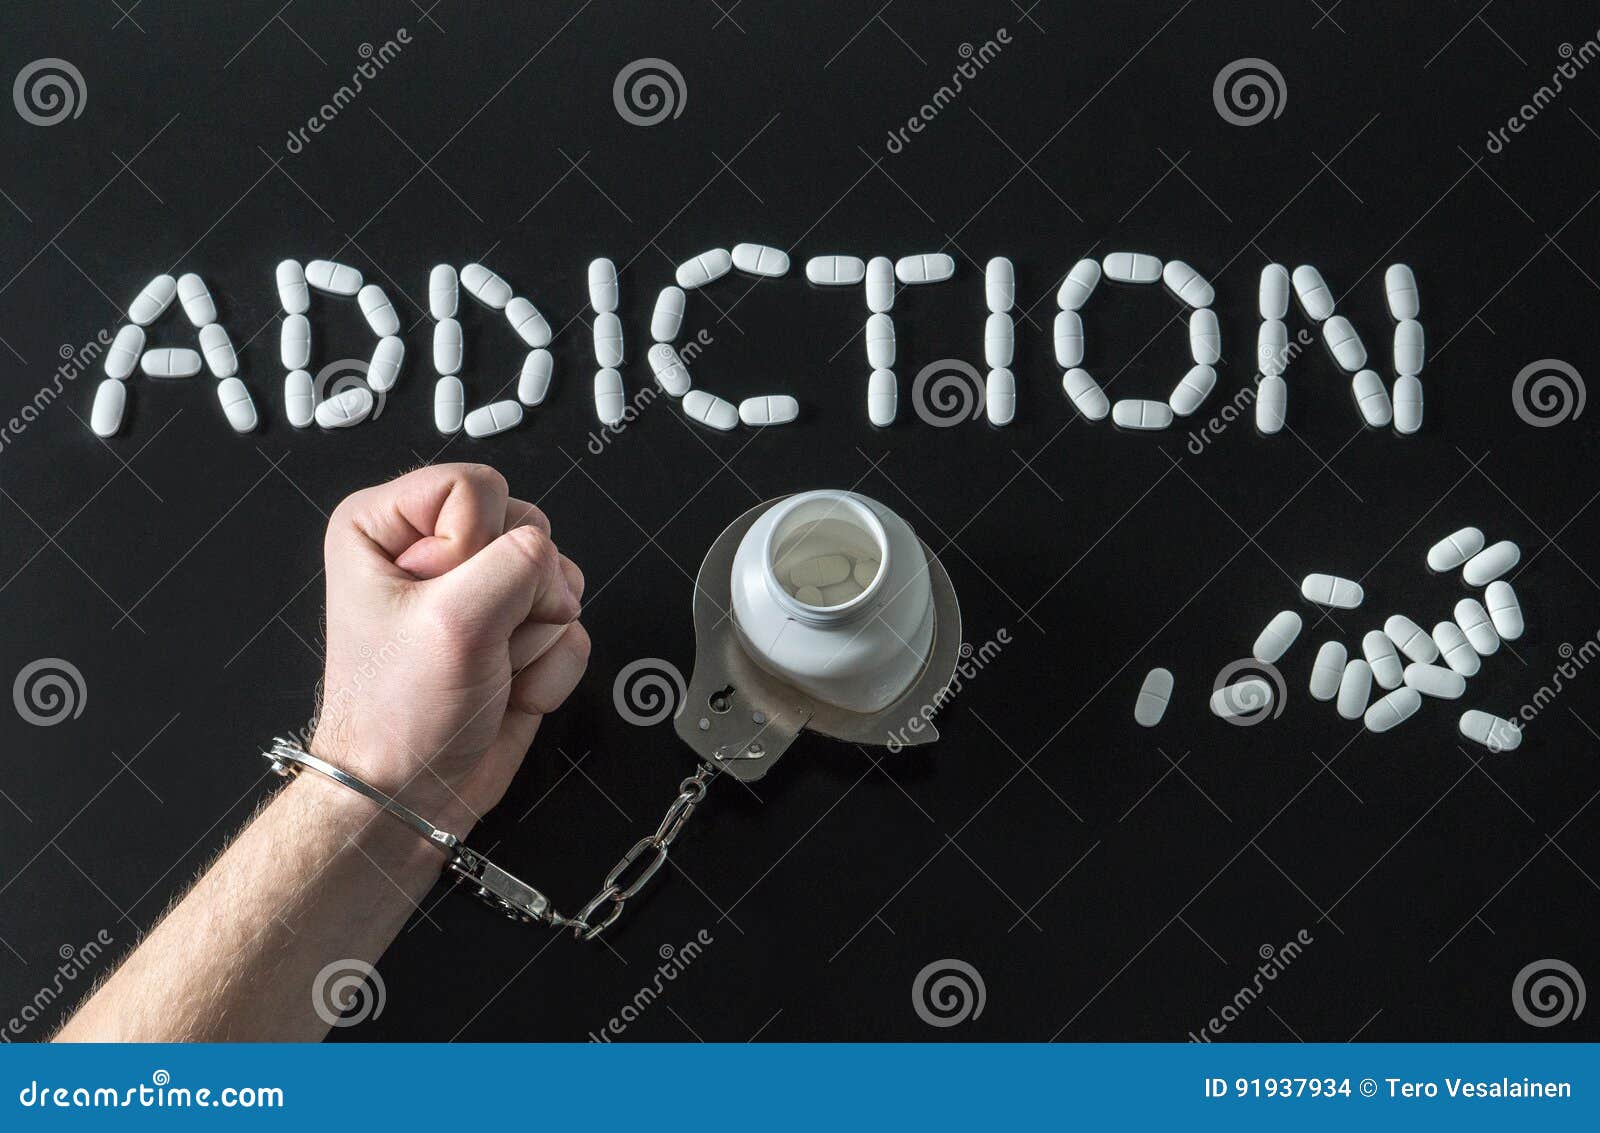 drug addict or medical abuse